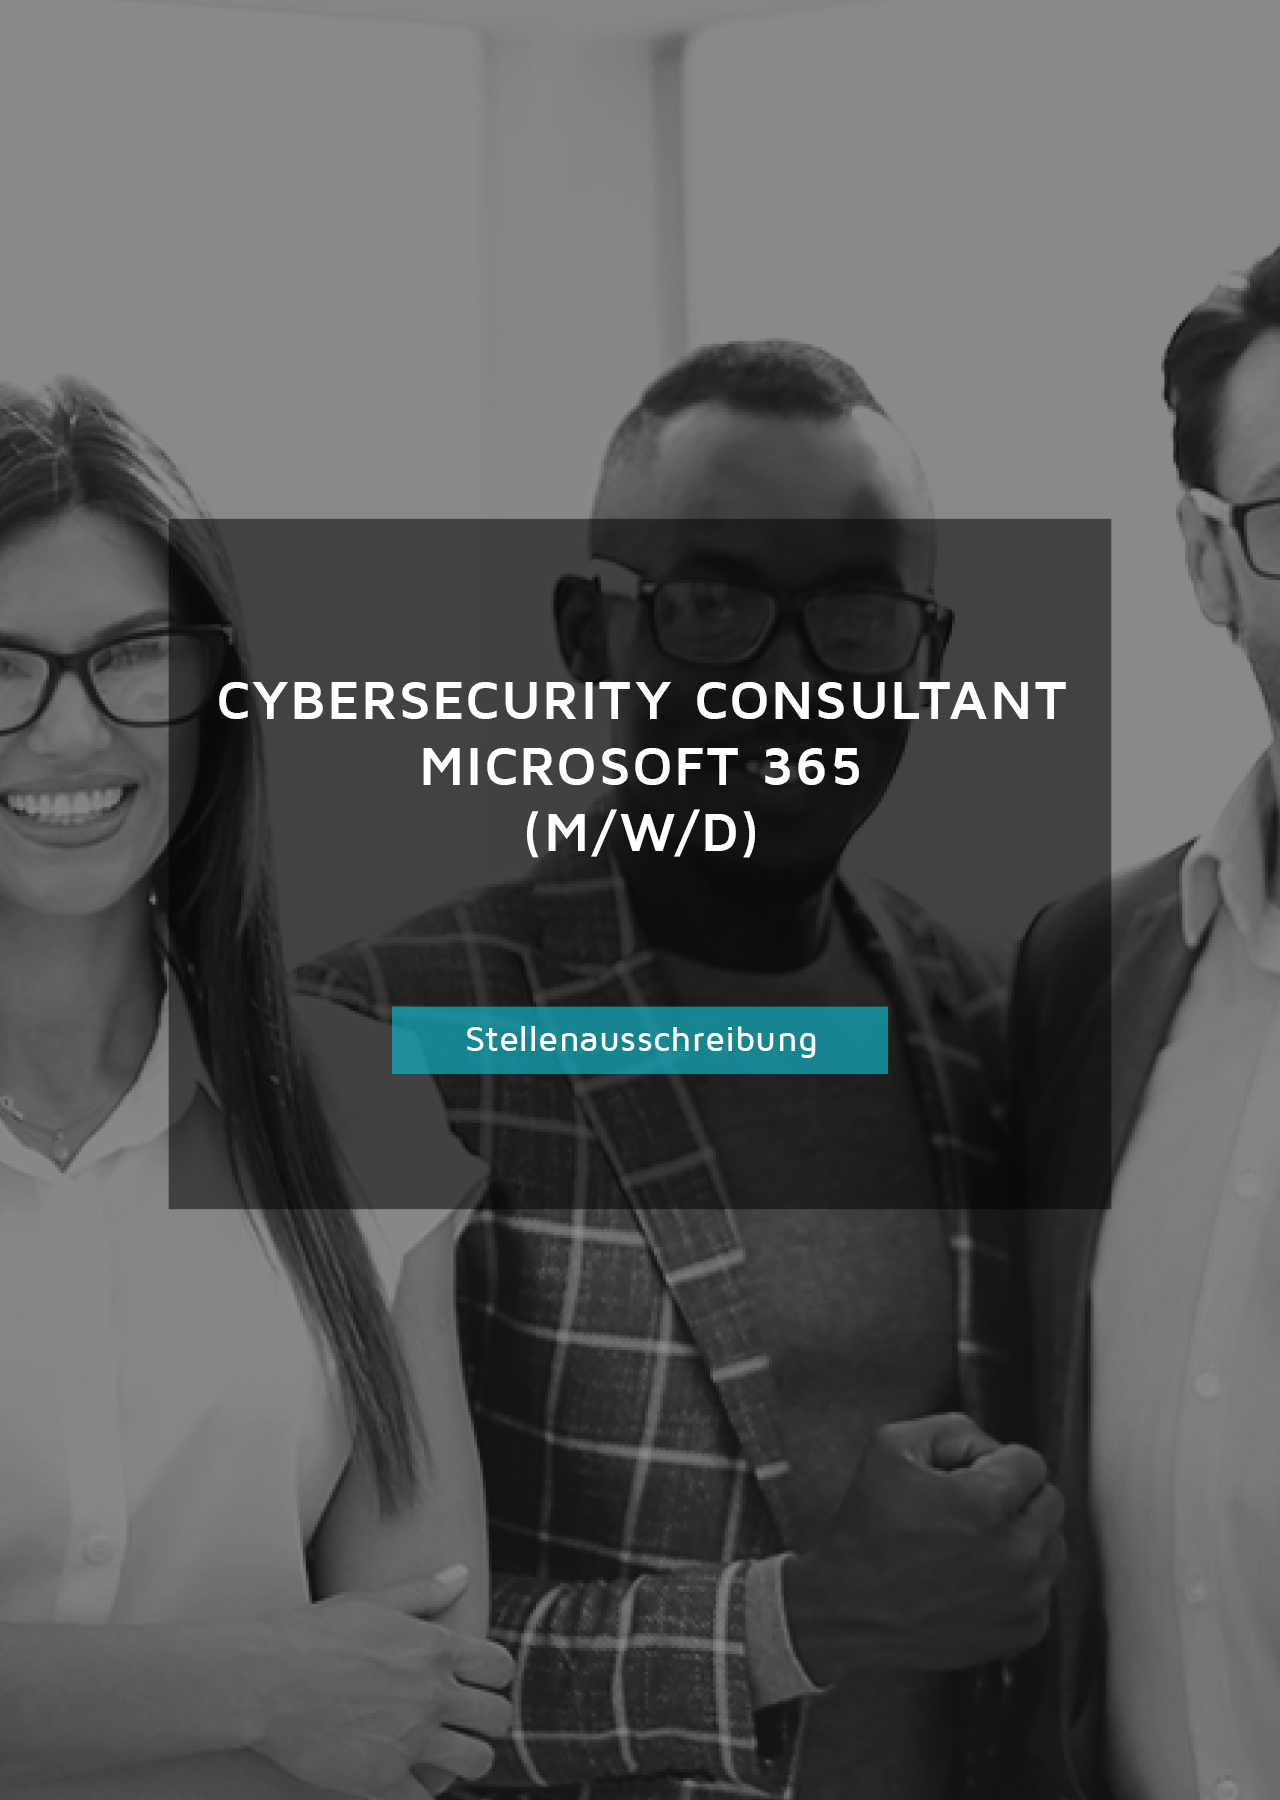 Stellenausschreibung als Cybersecurity Consultant Microsoft 365